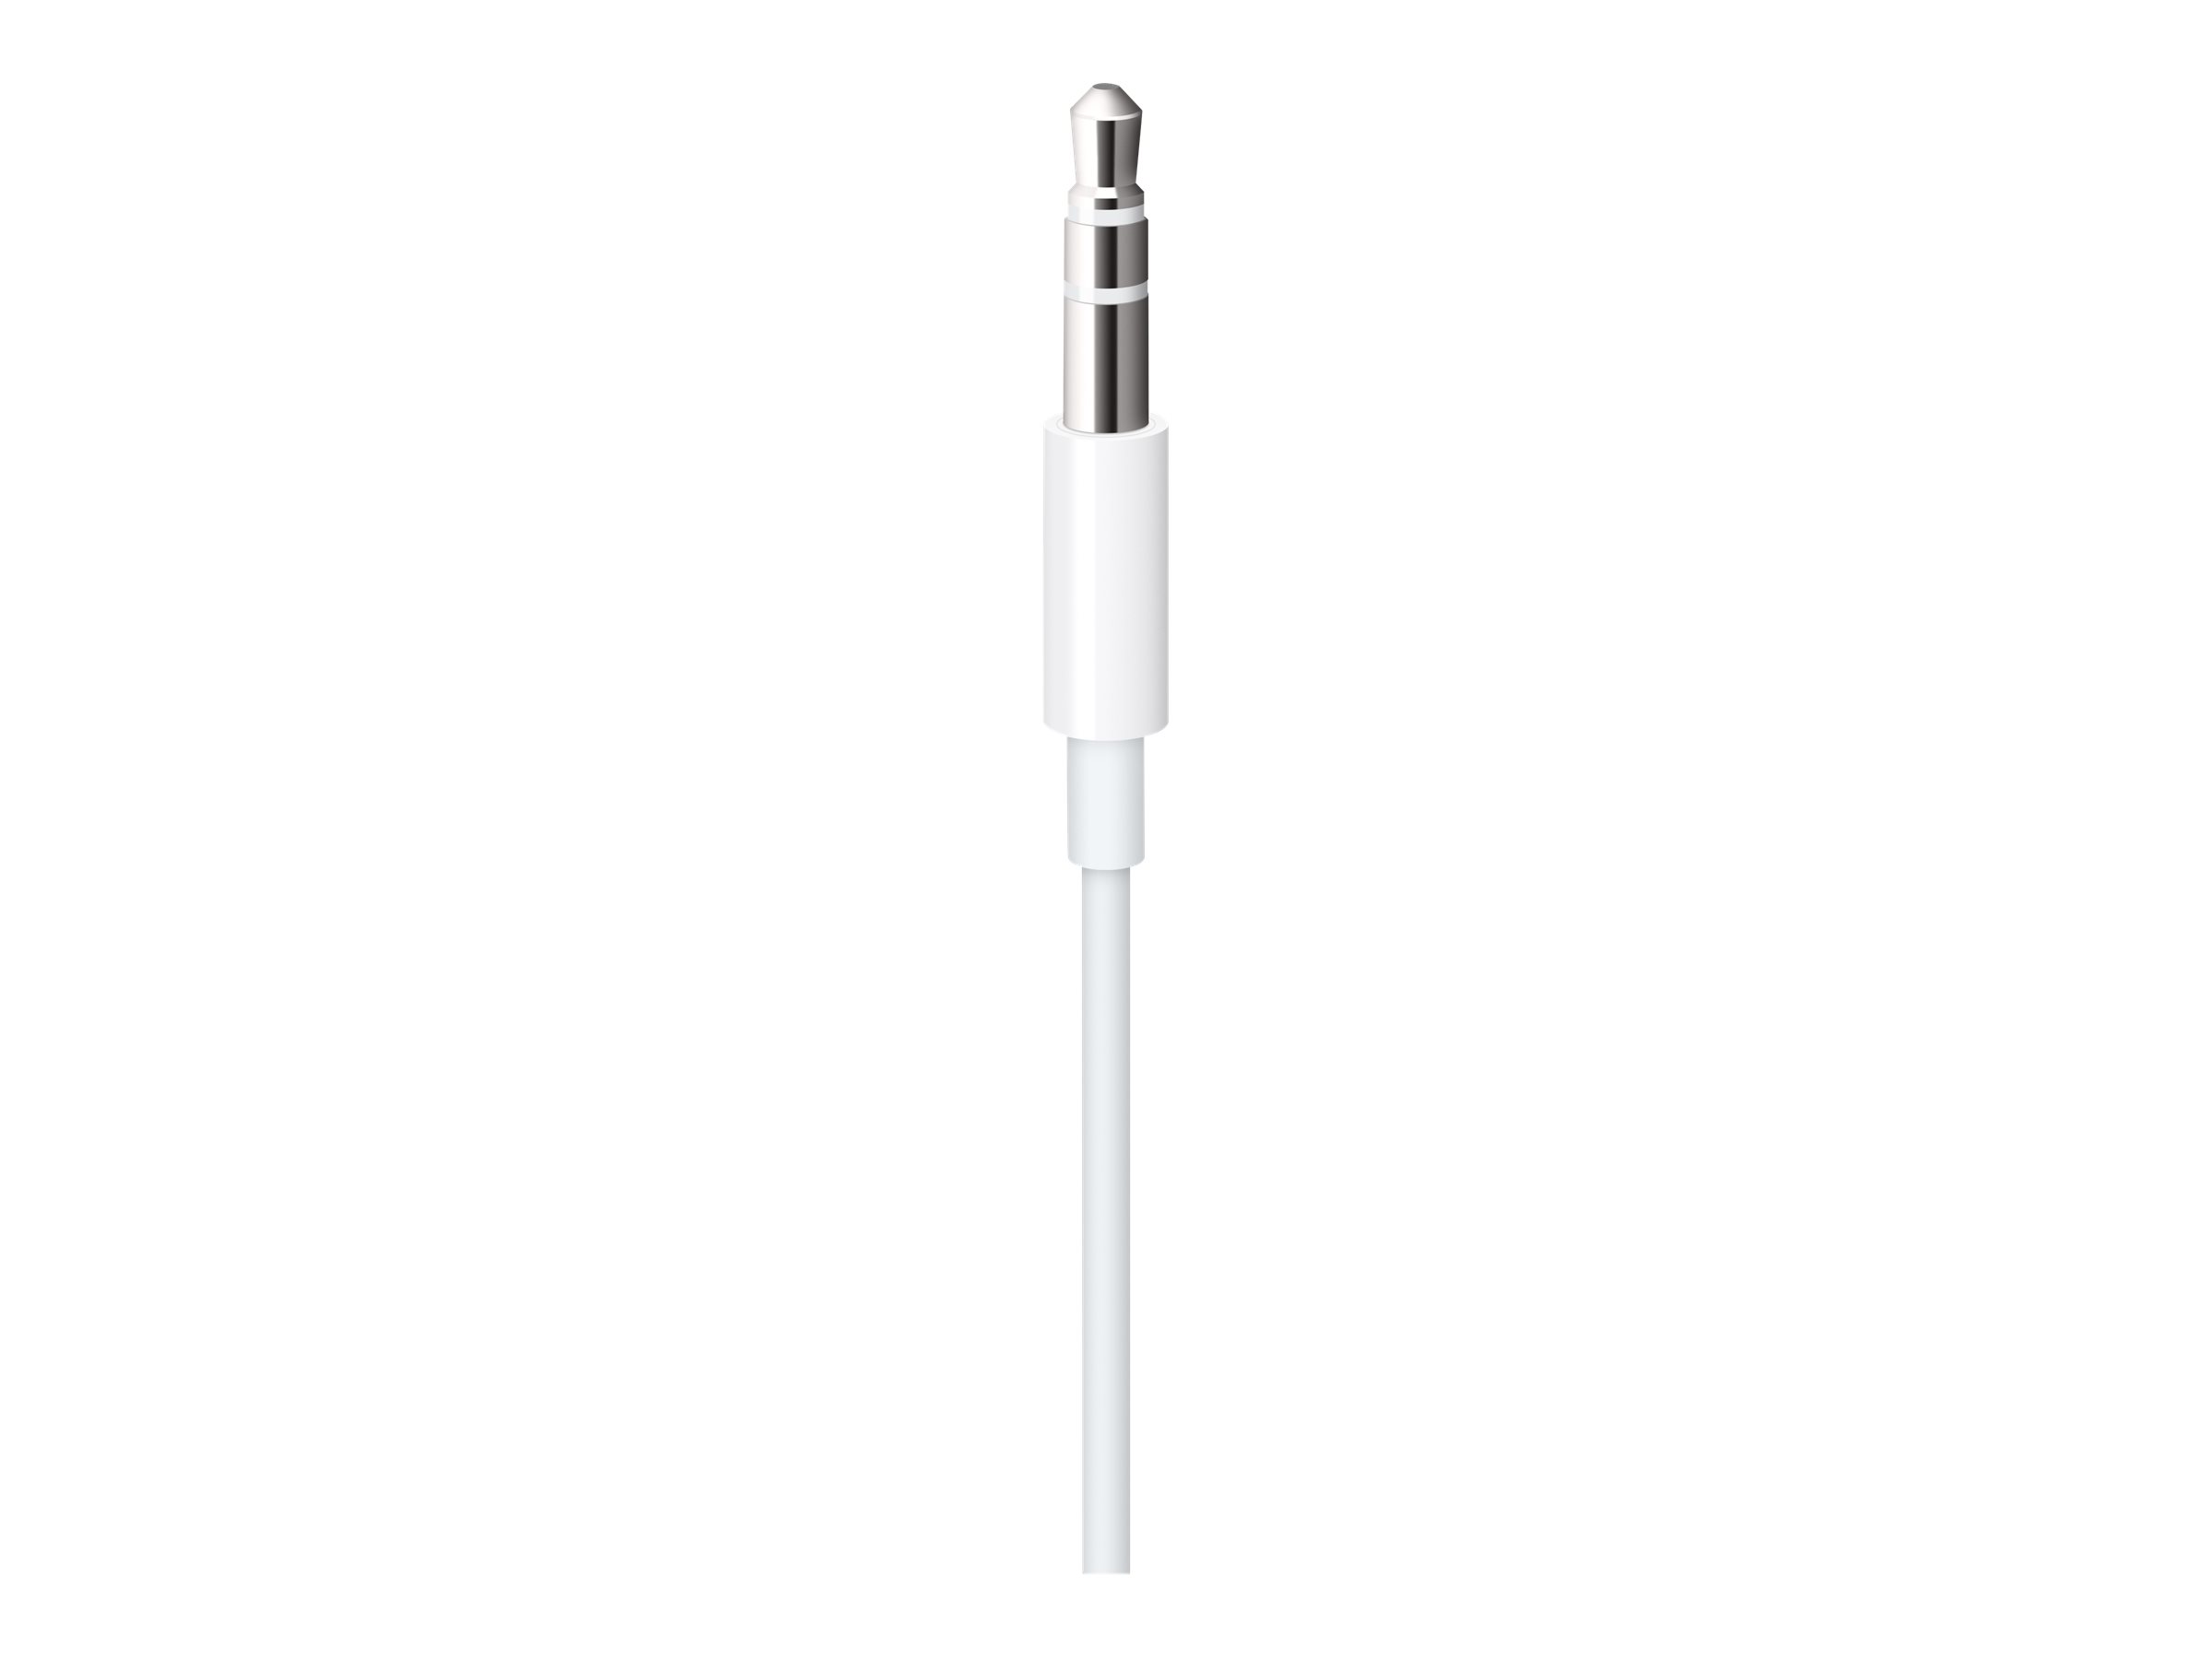 Apple Lightning to 3.5mm Audio Cable - Audiokabel - Lightning männlich zu 4-poliger Mini-Stecker männlich - 1.2 m - weiß - für iPad/iPhone/iPod (Lightning)